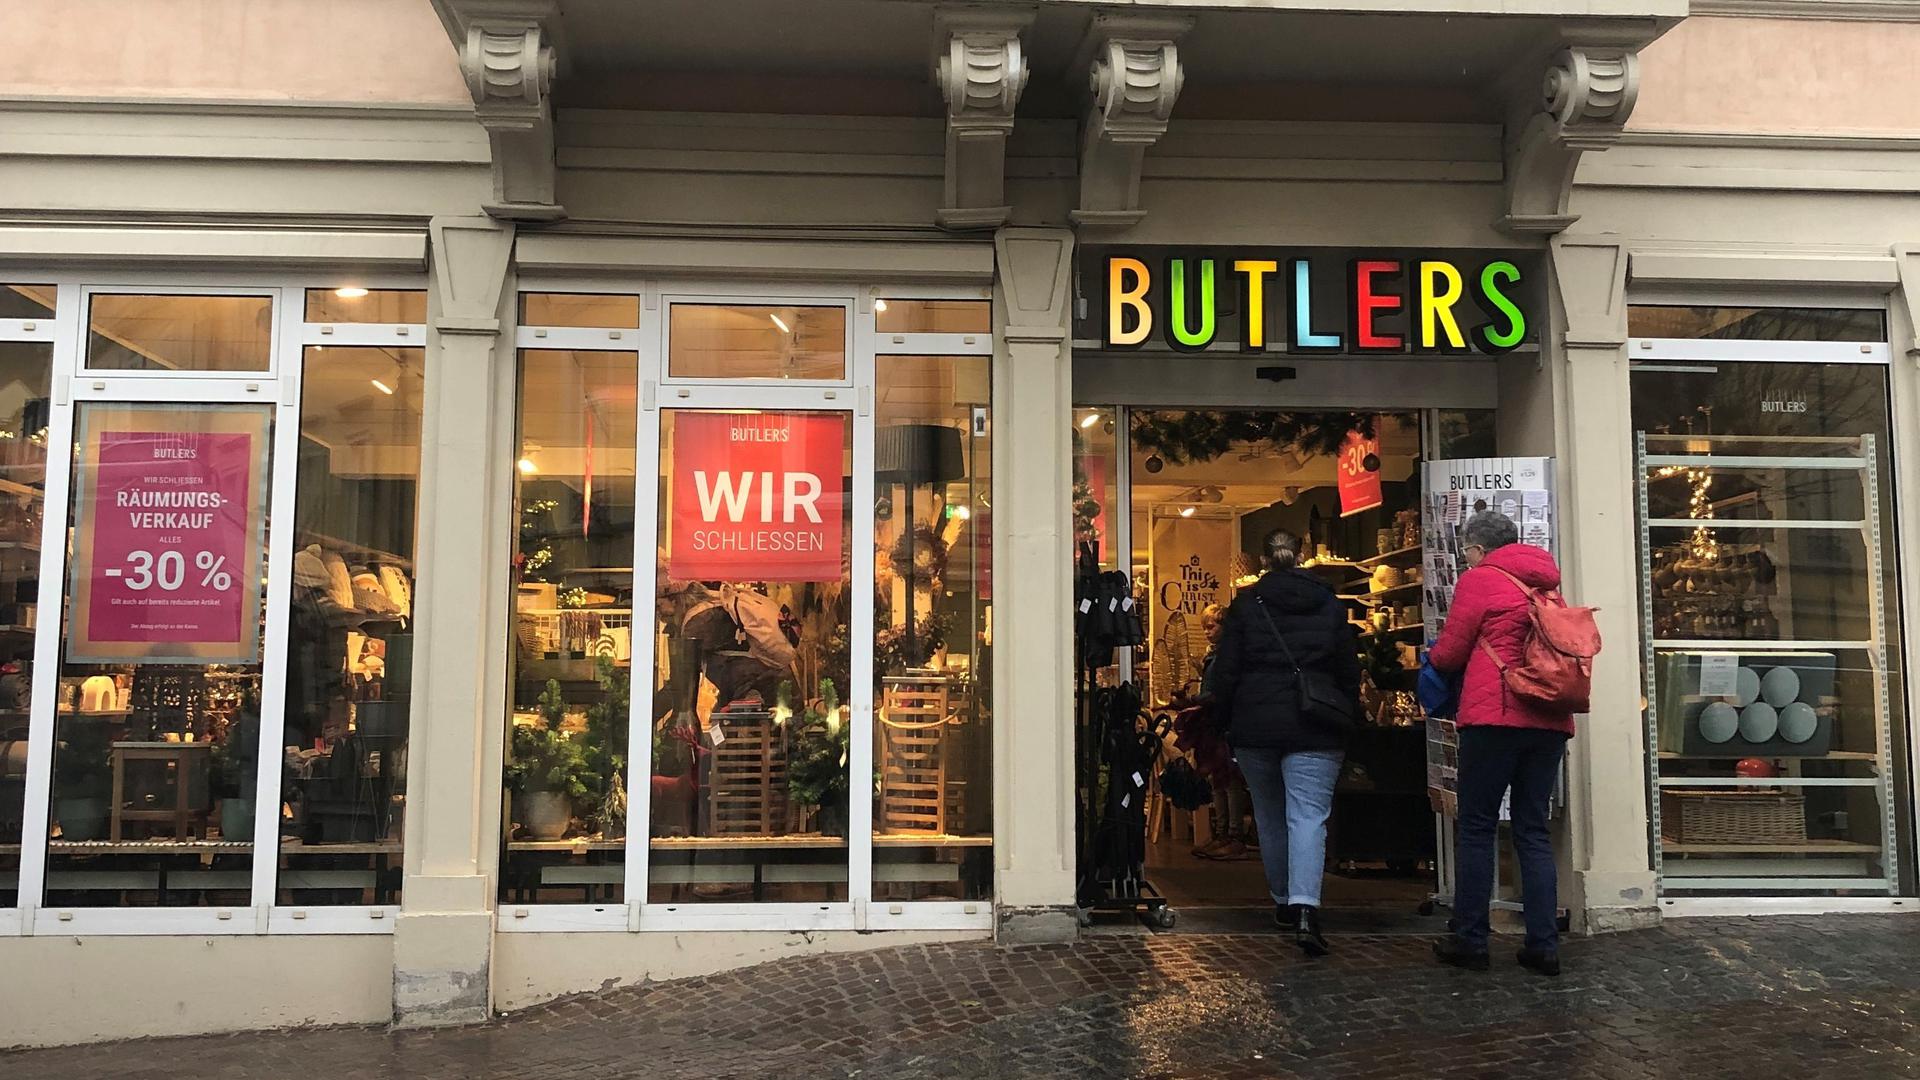 Butlers Baden-Baden